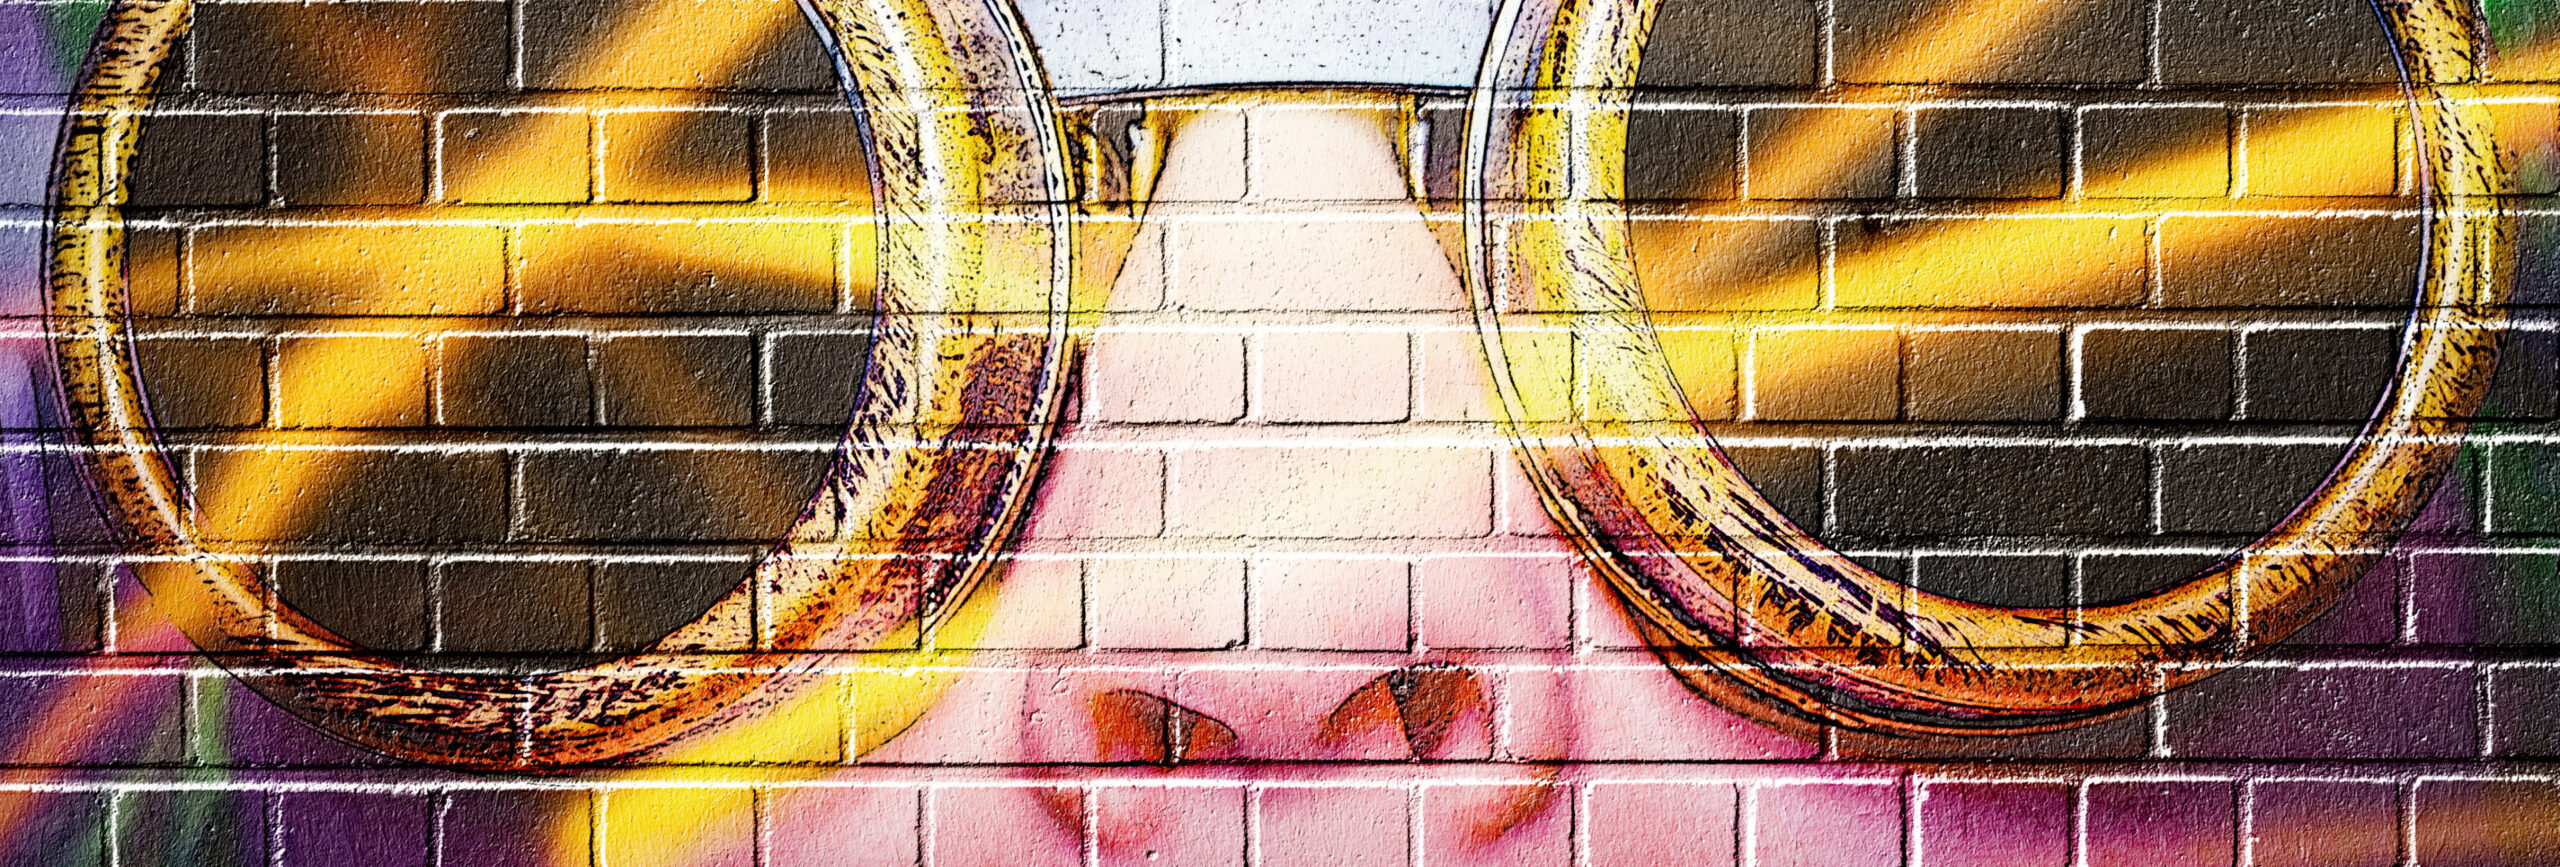 Graffiti-Kunst mit dem Porträt einer Frau mit Brille. - insysta